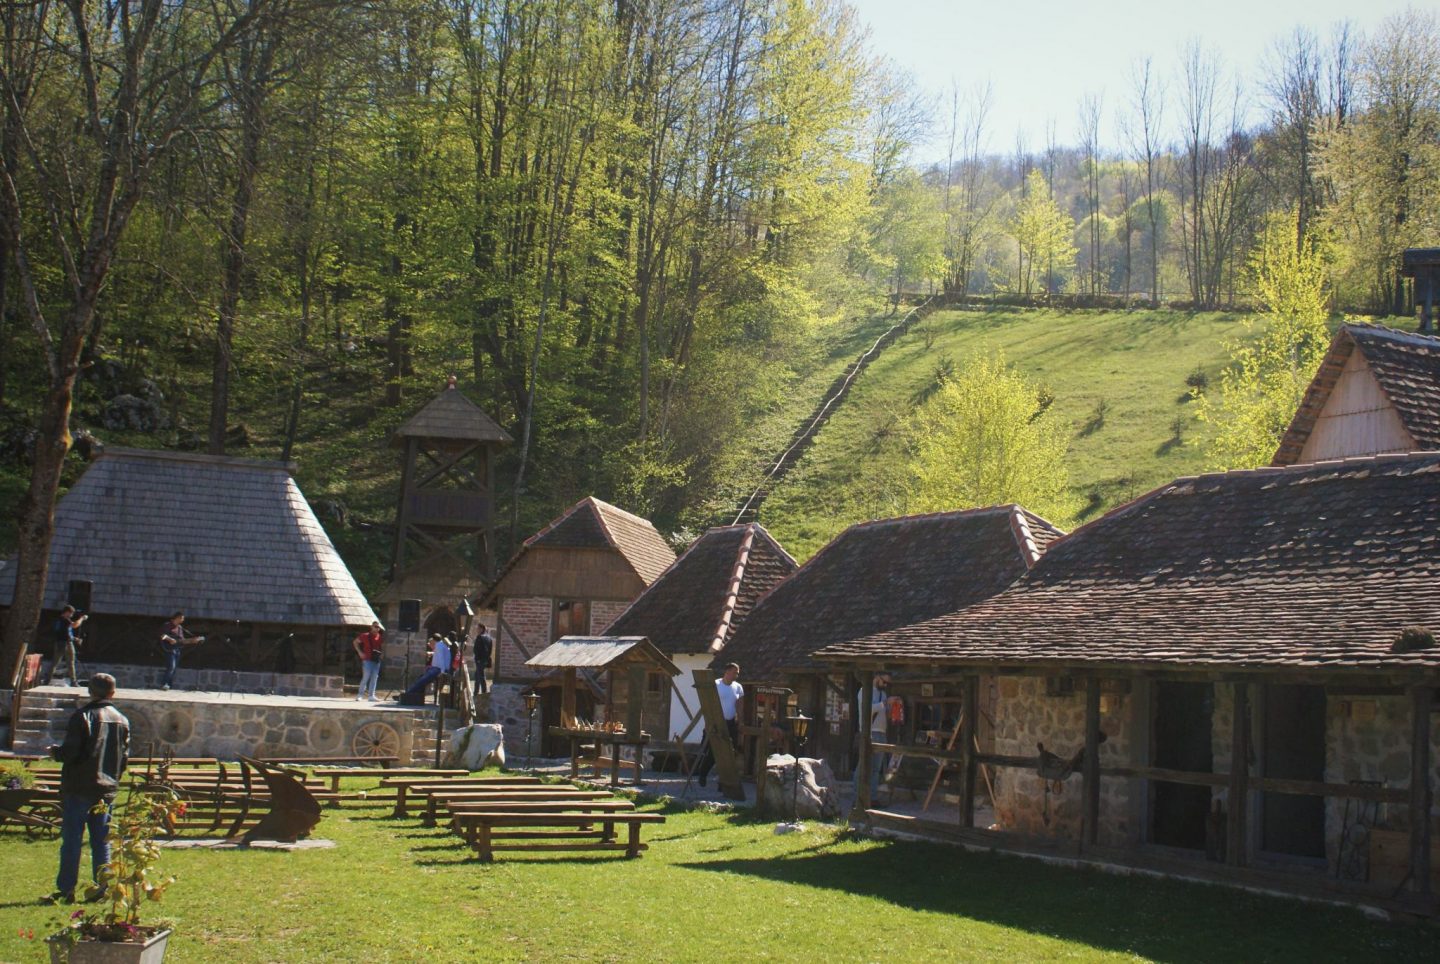 Etno selo Ljubačke doline © According to Kristina